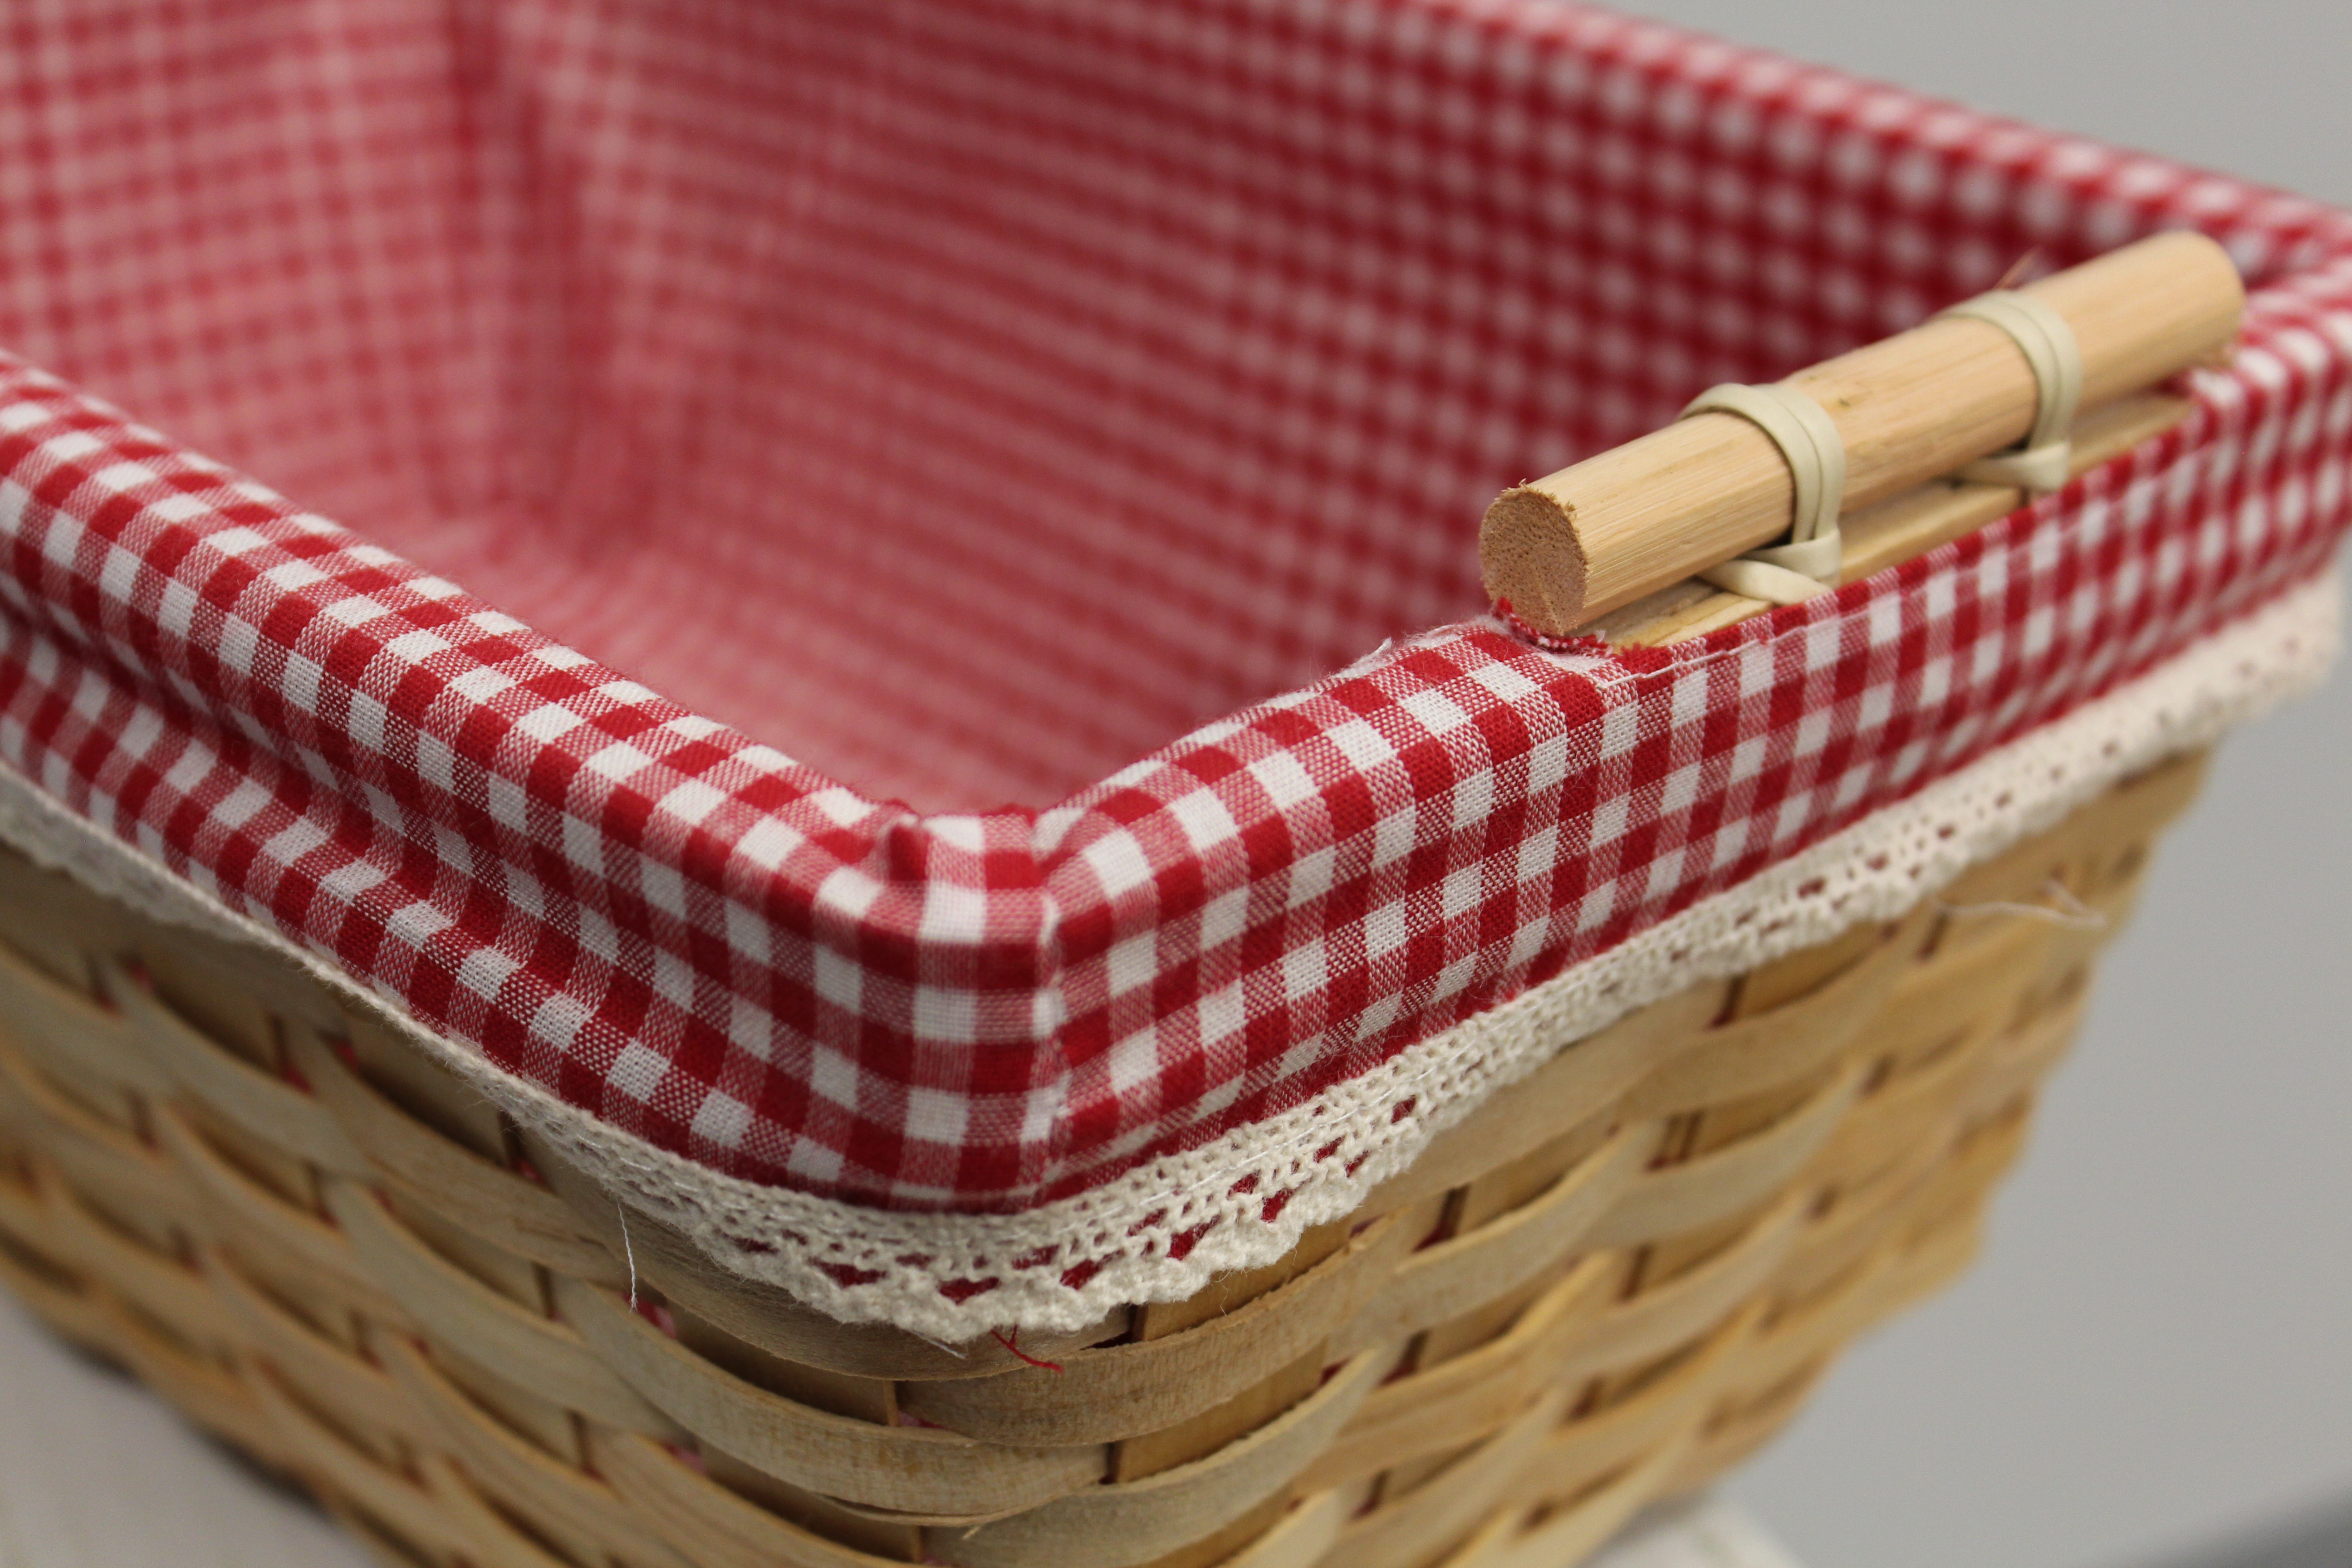 New Vintiquewise Gingham Lined Shelf Baskets Set Of 2 651355031500 Ebay